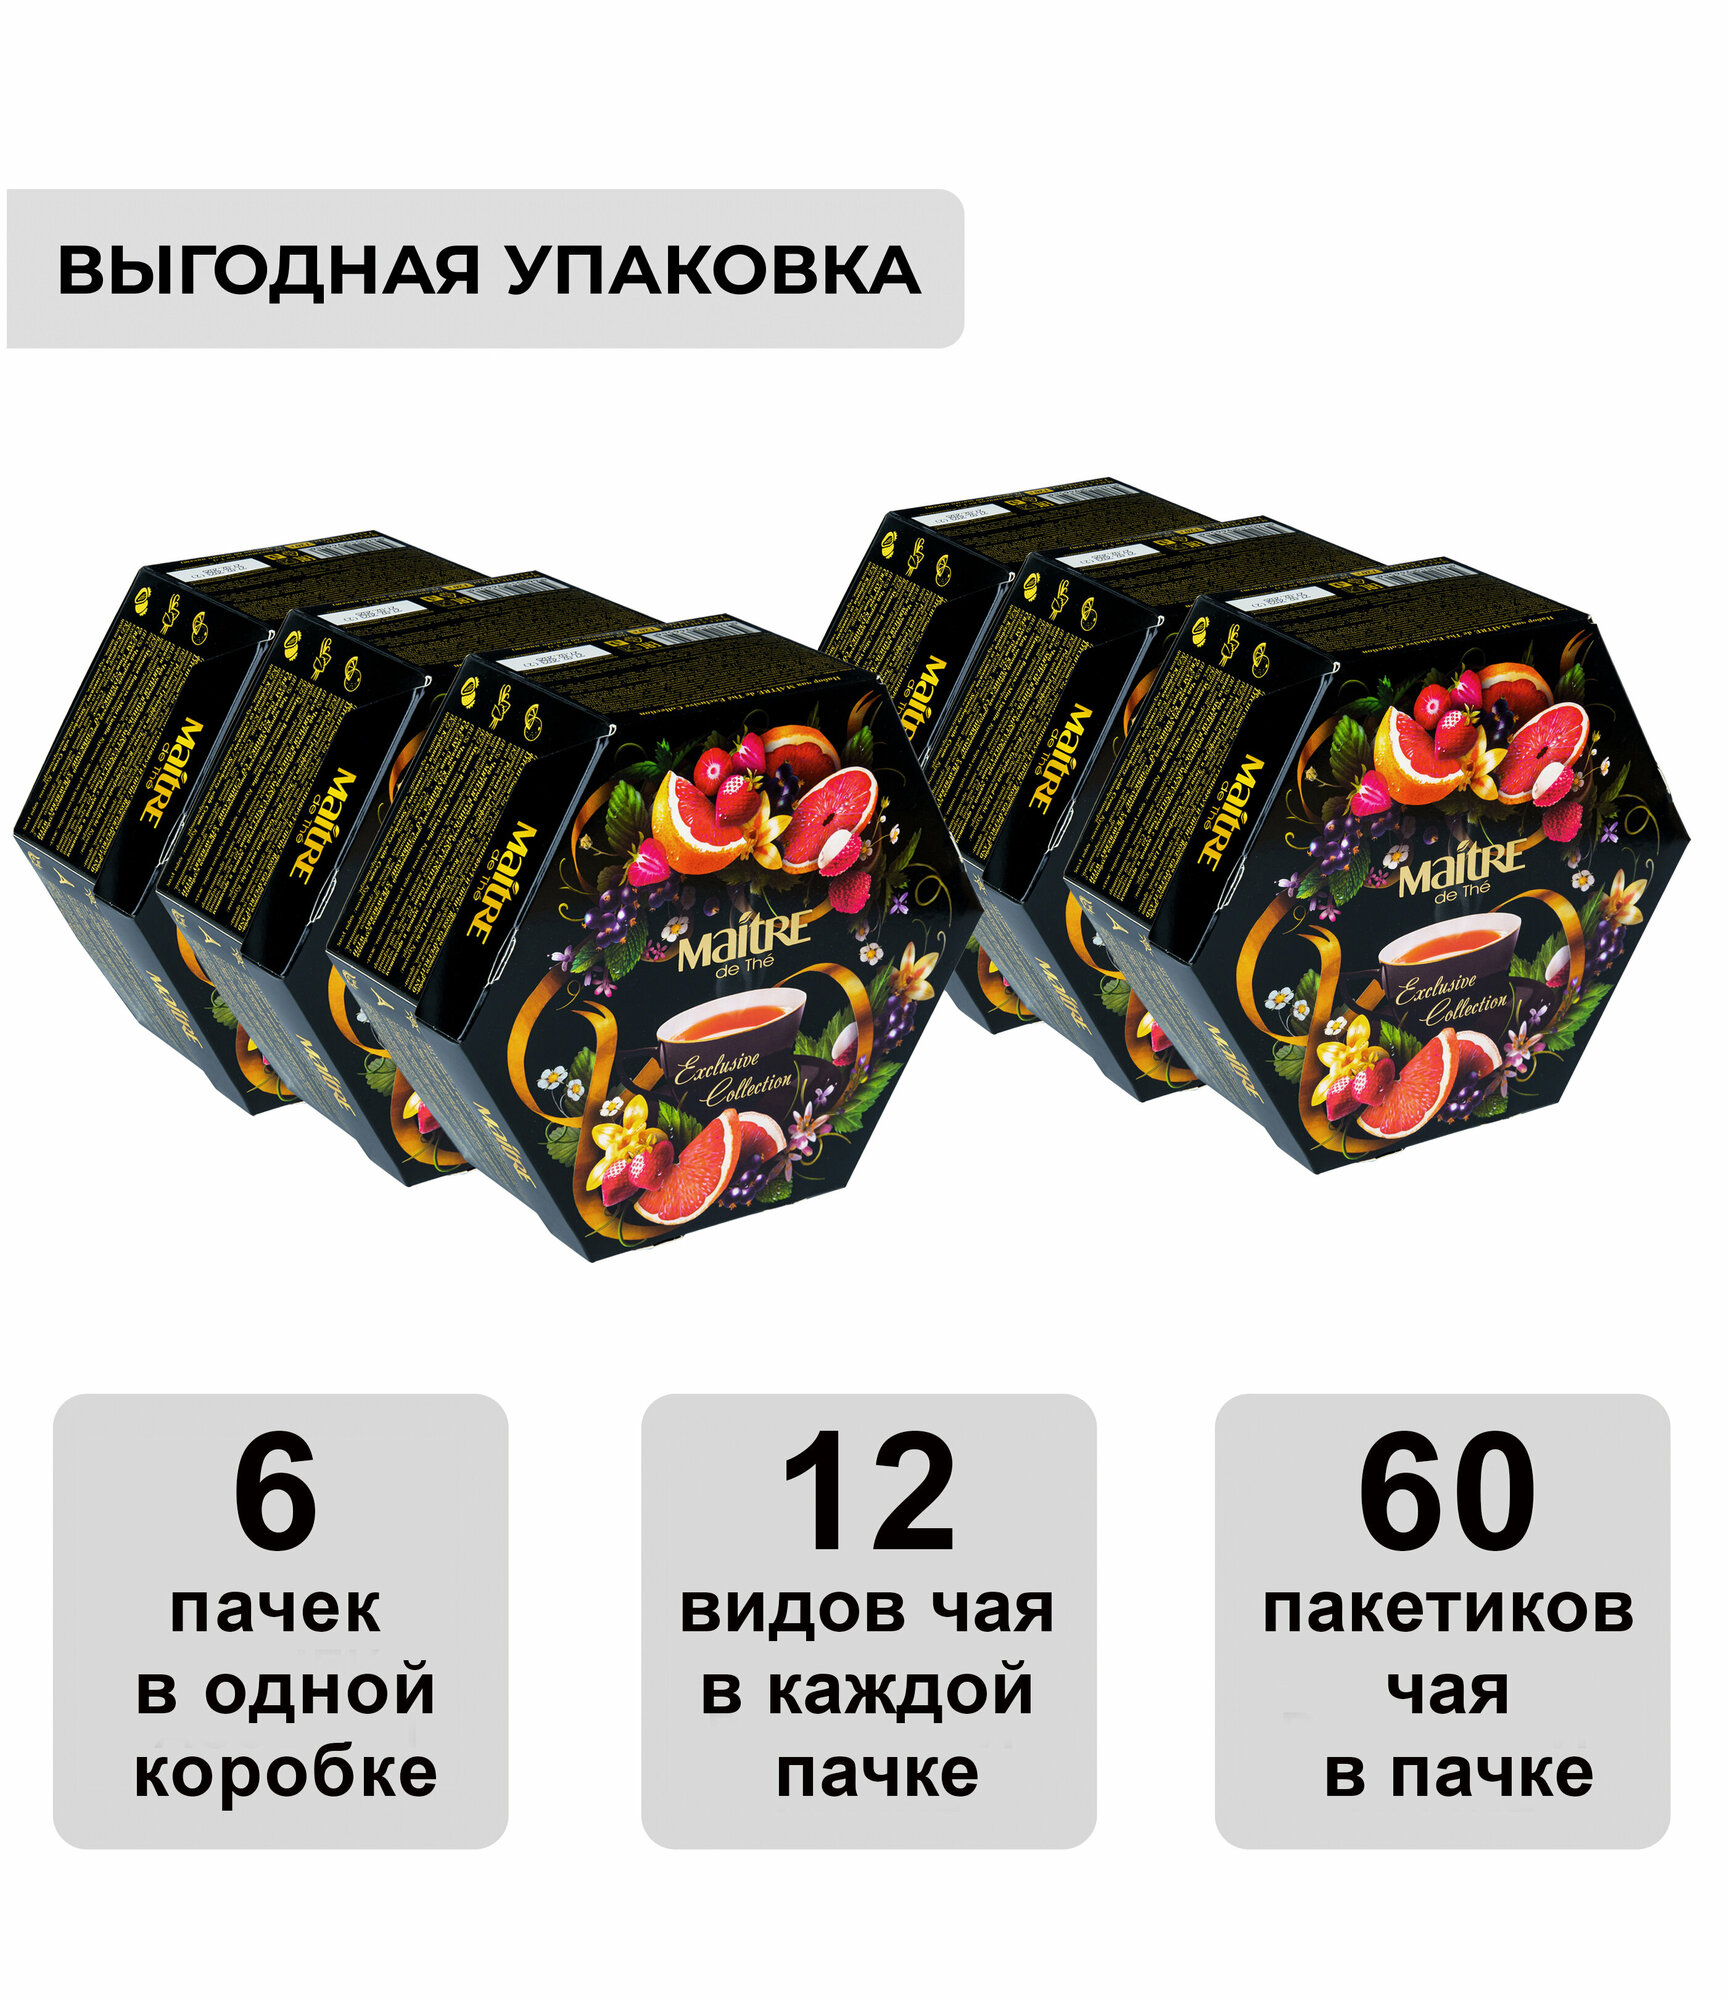 Набор чая ассорти в пакетиках MAITRE de The "Эксклюзивная коллекция", подарочная упаковка, 720 г, 6 пачек, 360 пакетиков, мэтр